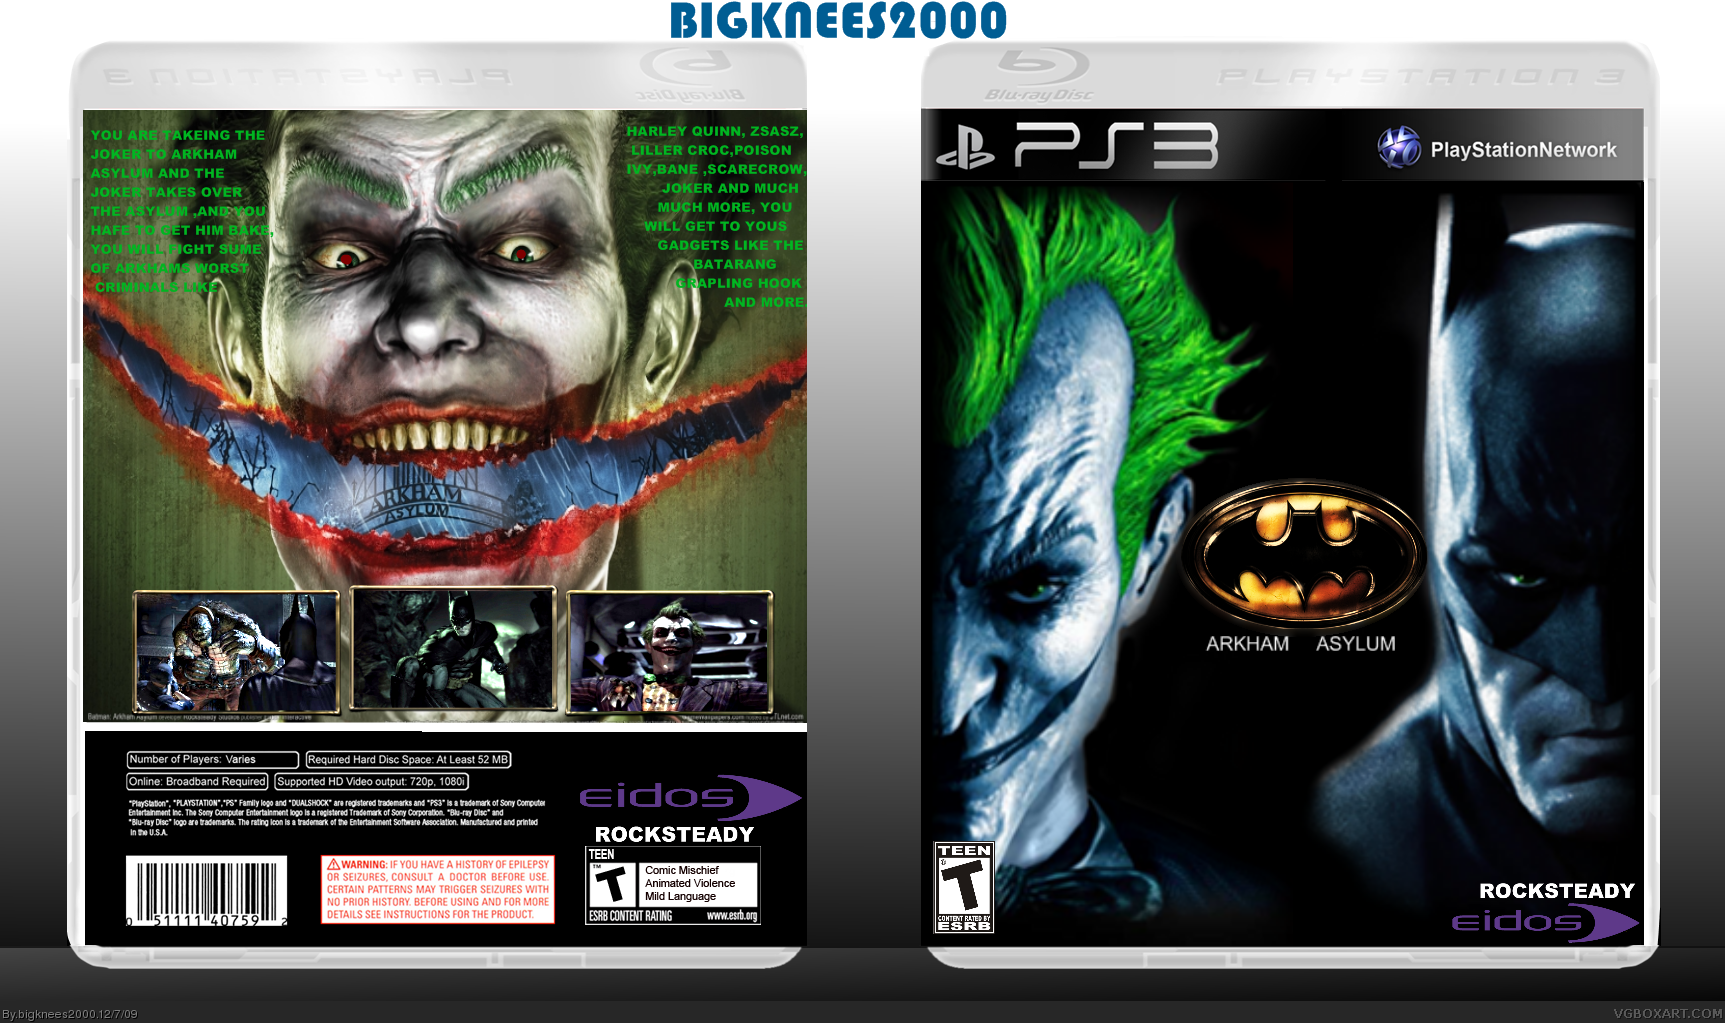 Batman Arkham Asylum PlayStation 3 Box Art Cover by bigknees2000